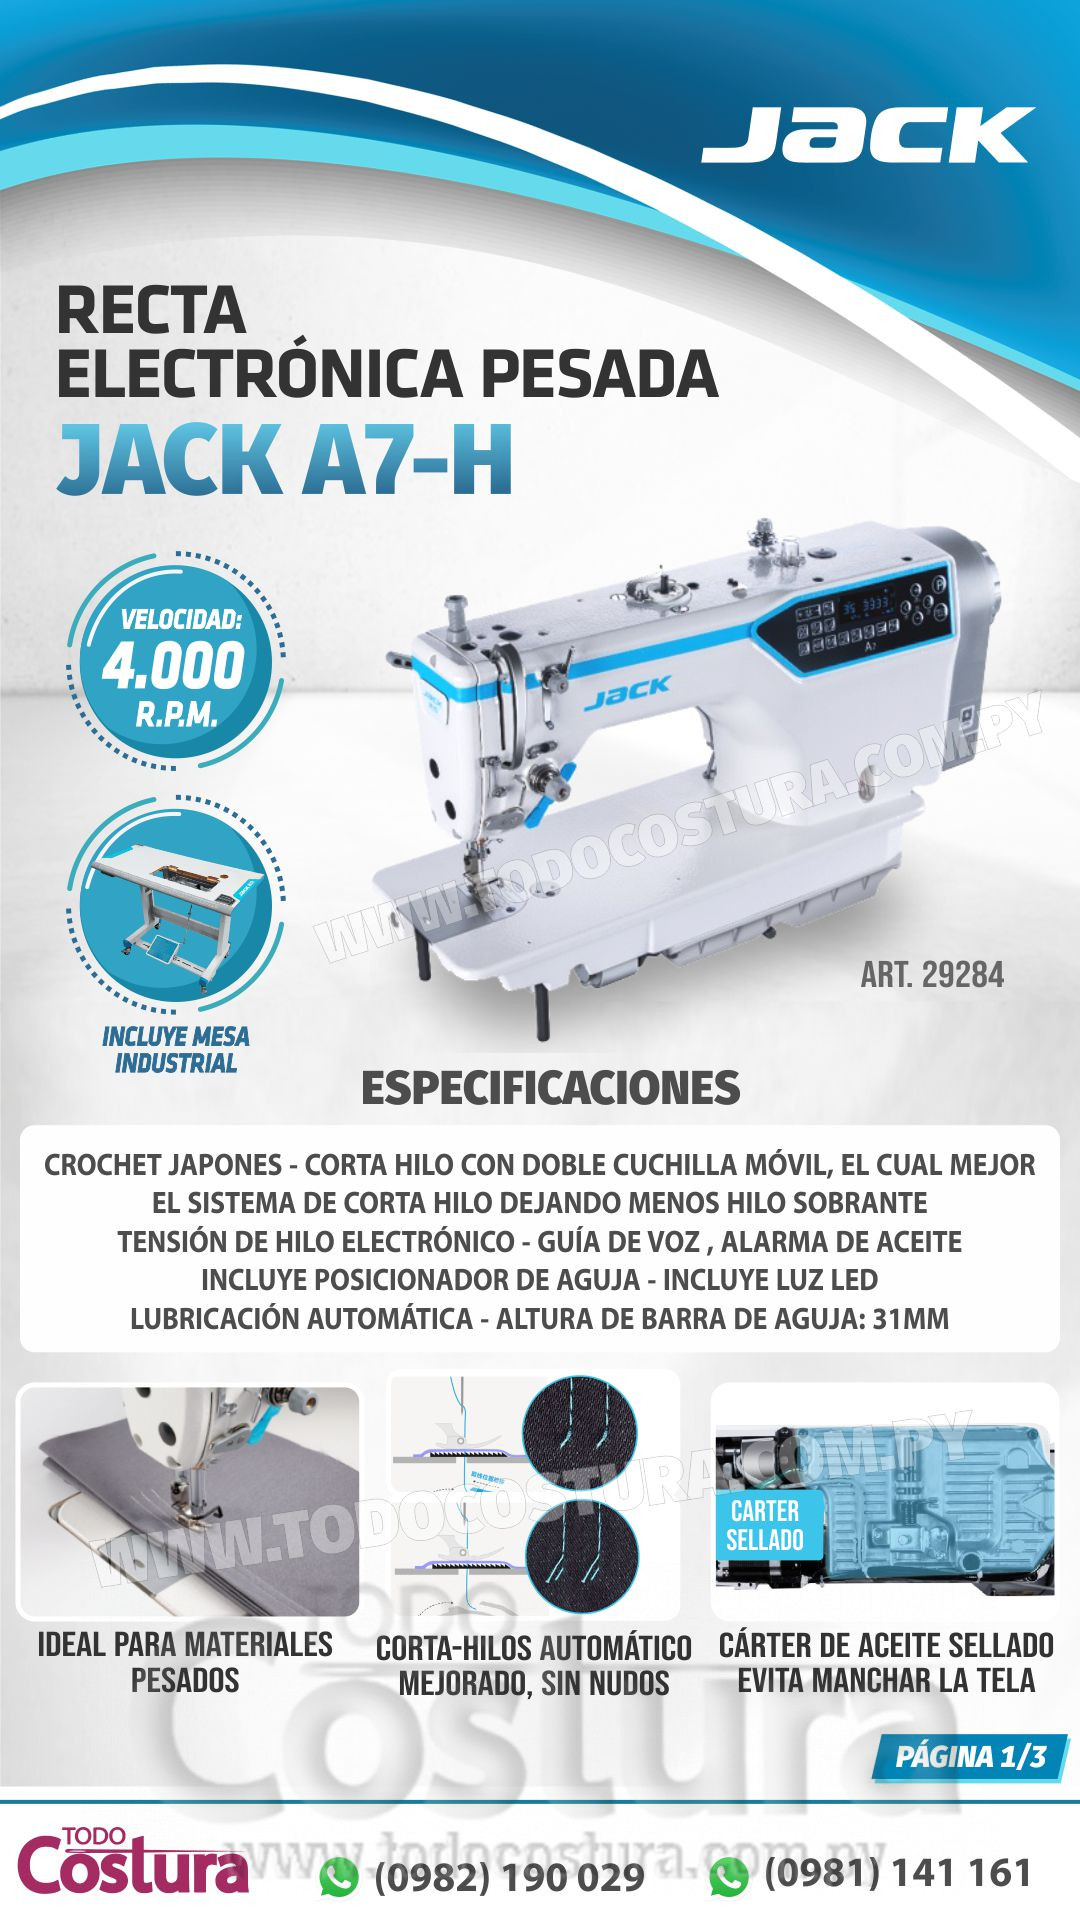 RECTA (ELECTRONICA - PESADA) JACK A7-H (MOTOR INCORPORADO)